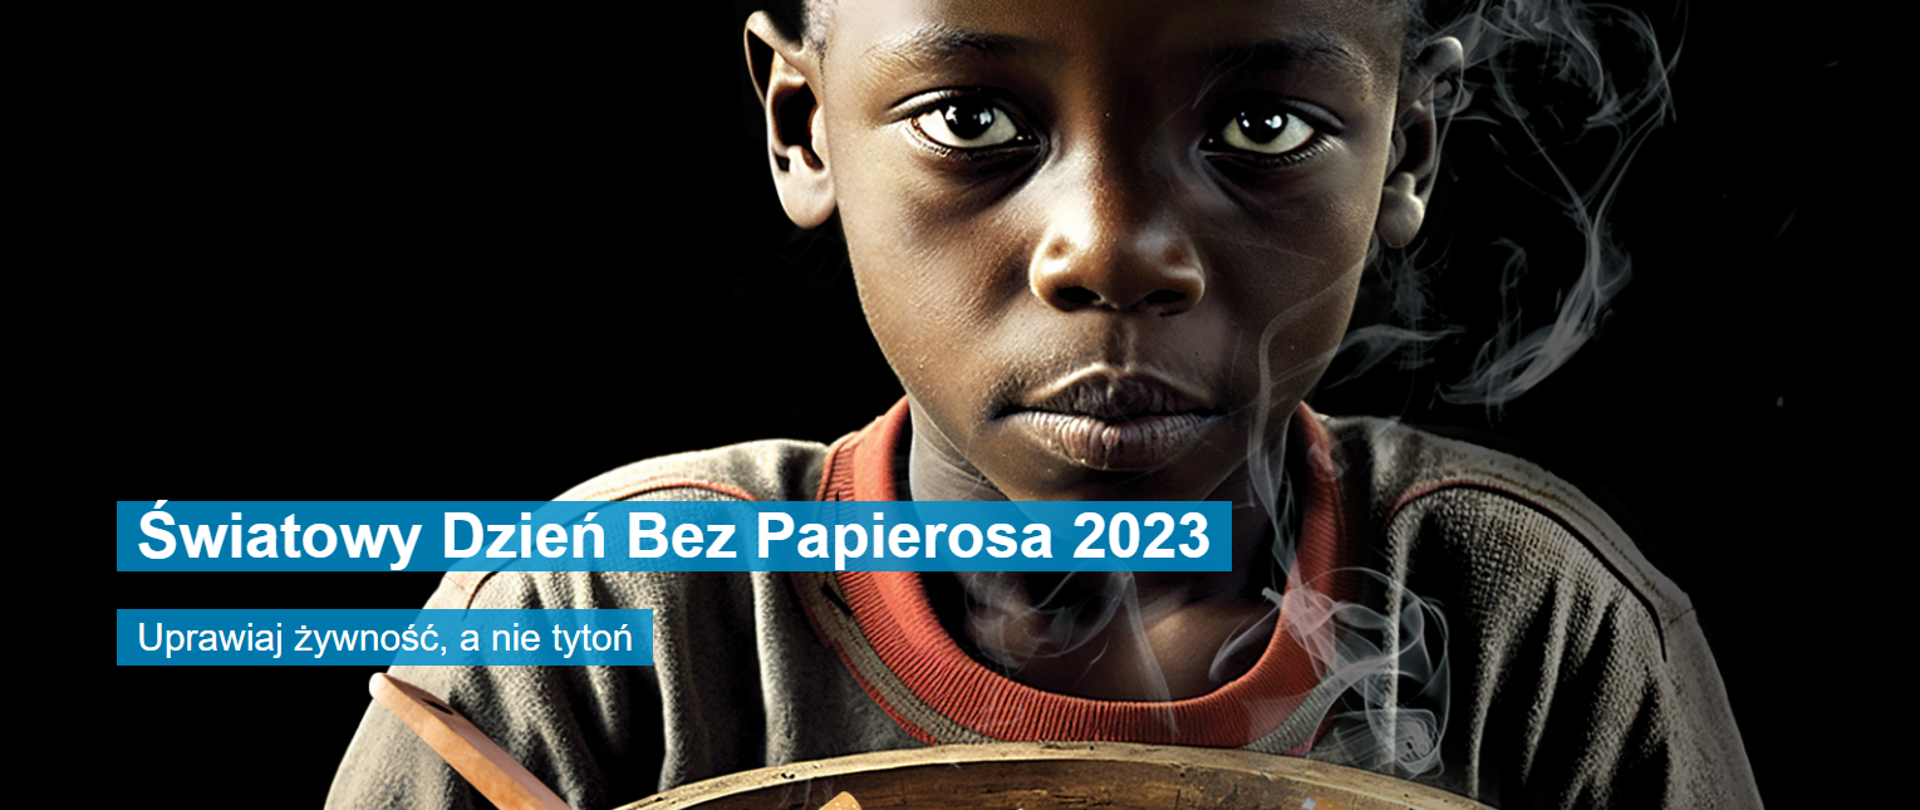 Czarne tło, dziecko trzymające miskę z papierosami, napis o treści Światowy Dzień Bez Papierosa 2023, Uprawiaj żywność, a nie tytoń